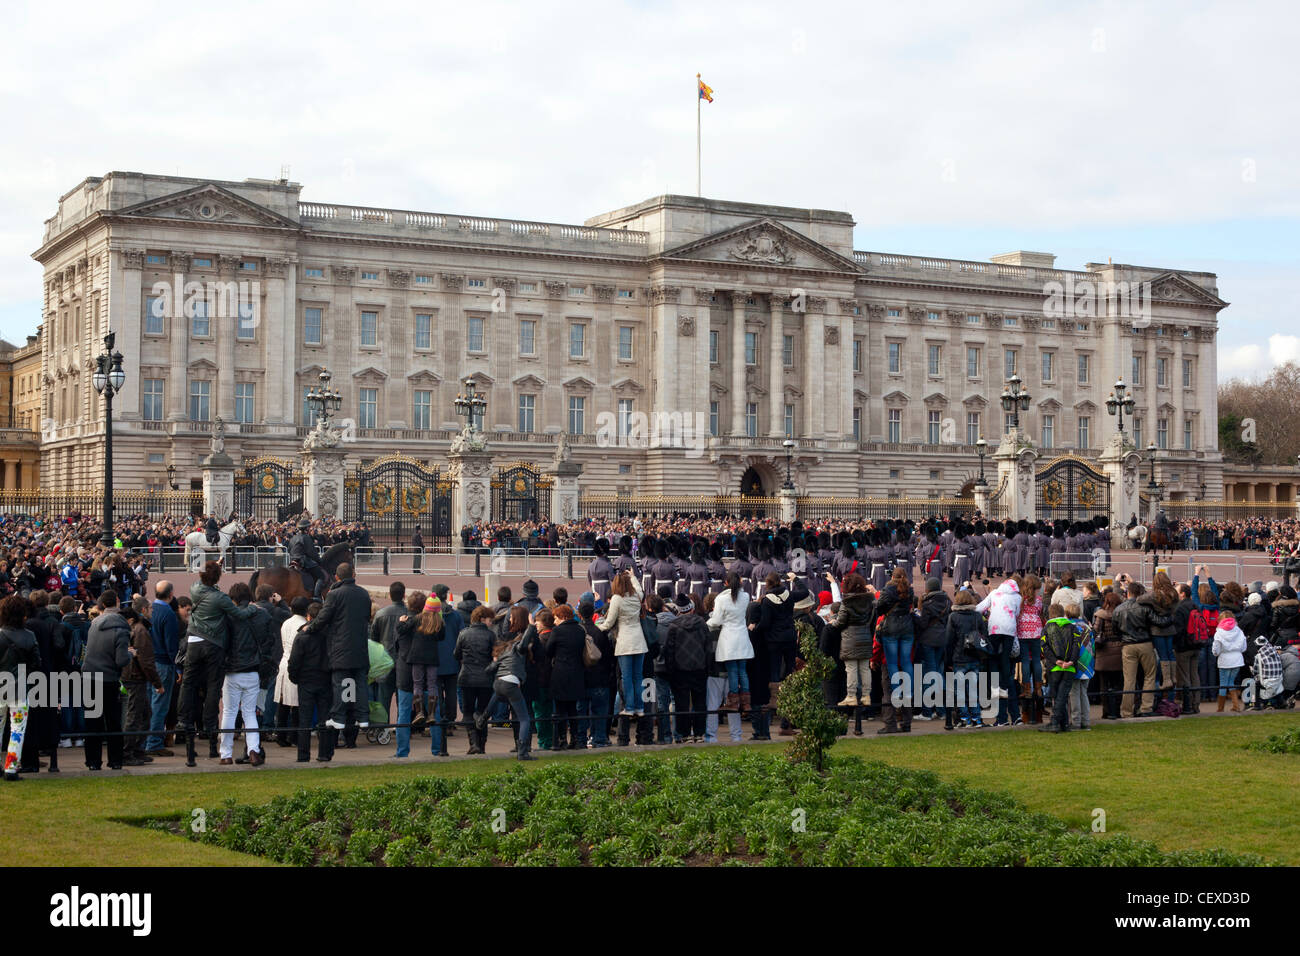 La foule à l'extérieur de Buckingham Palace pour voir la relève de la garde. Banque D'Images